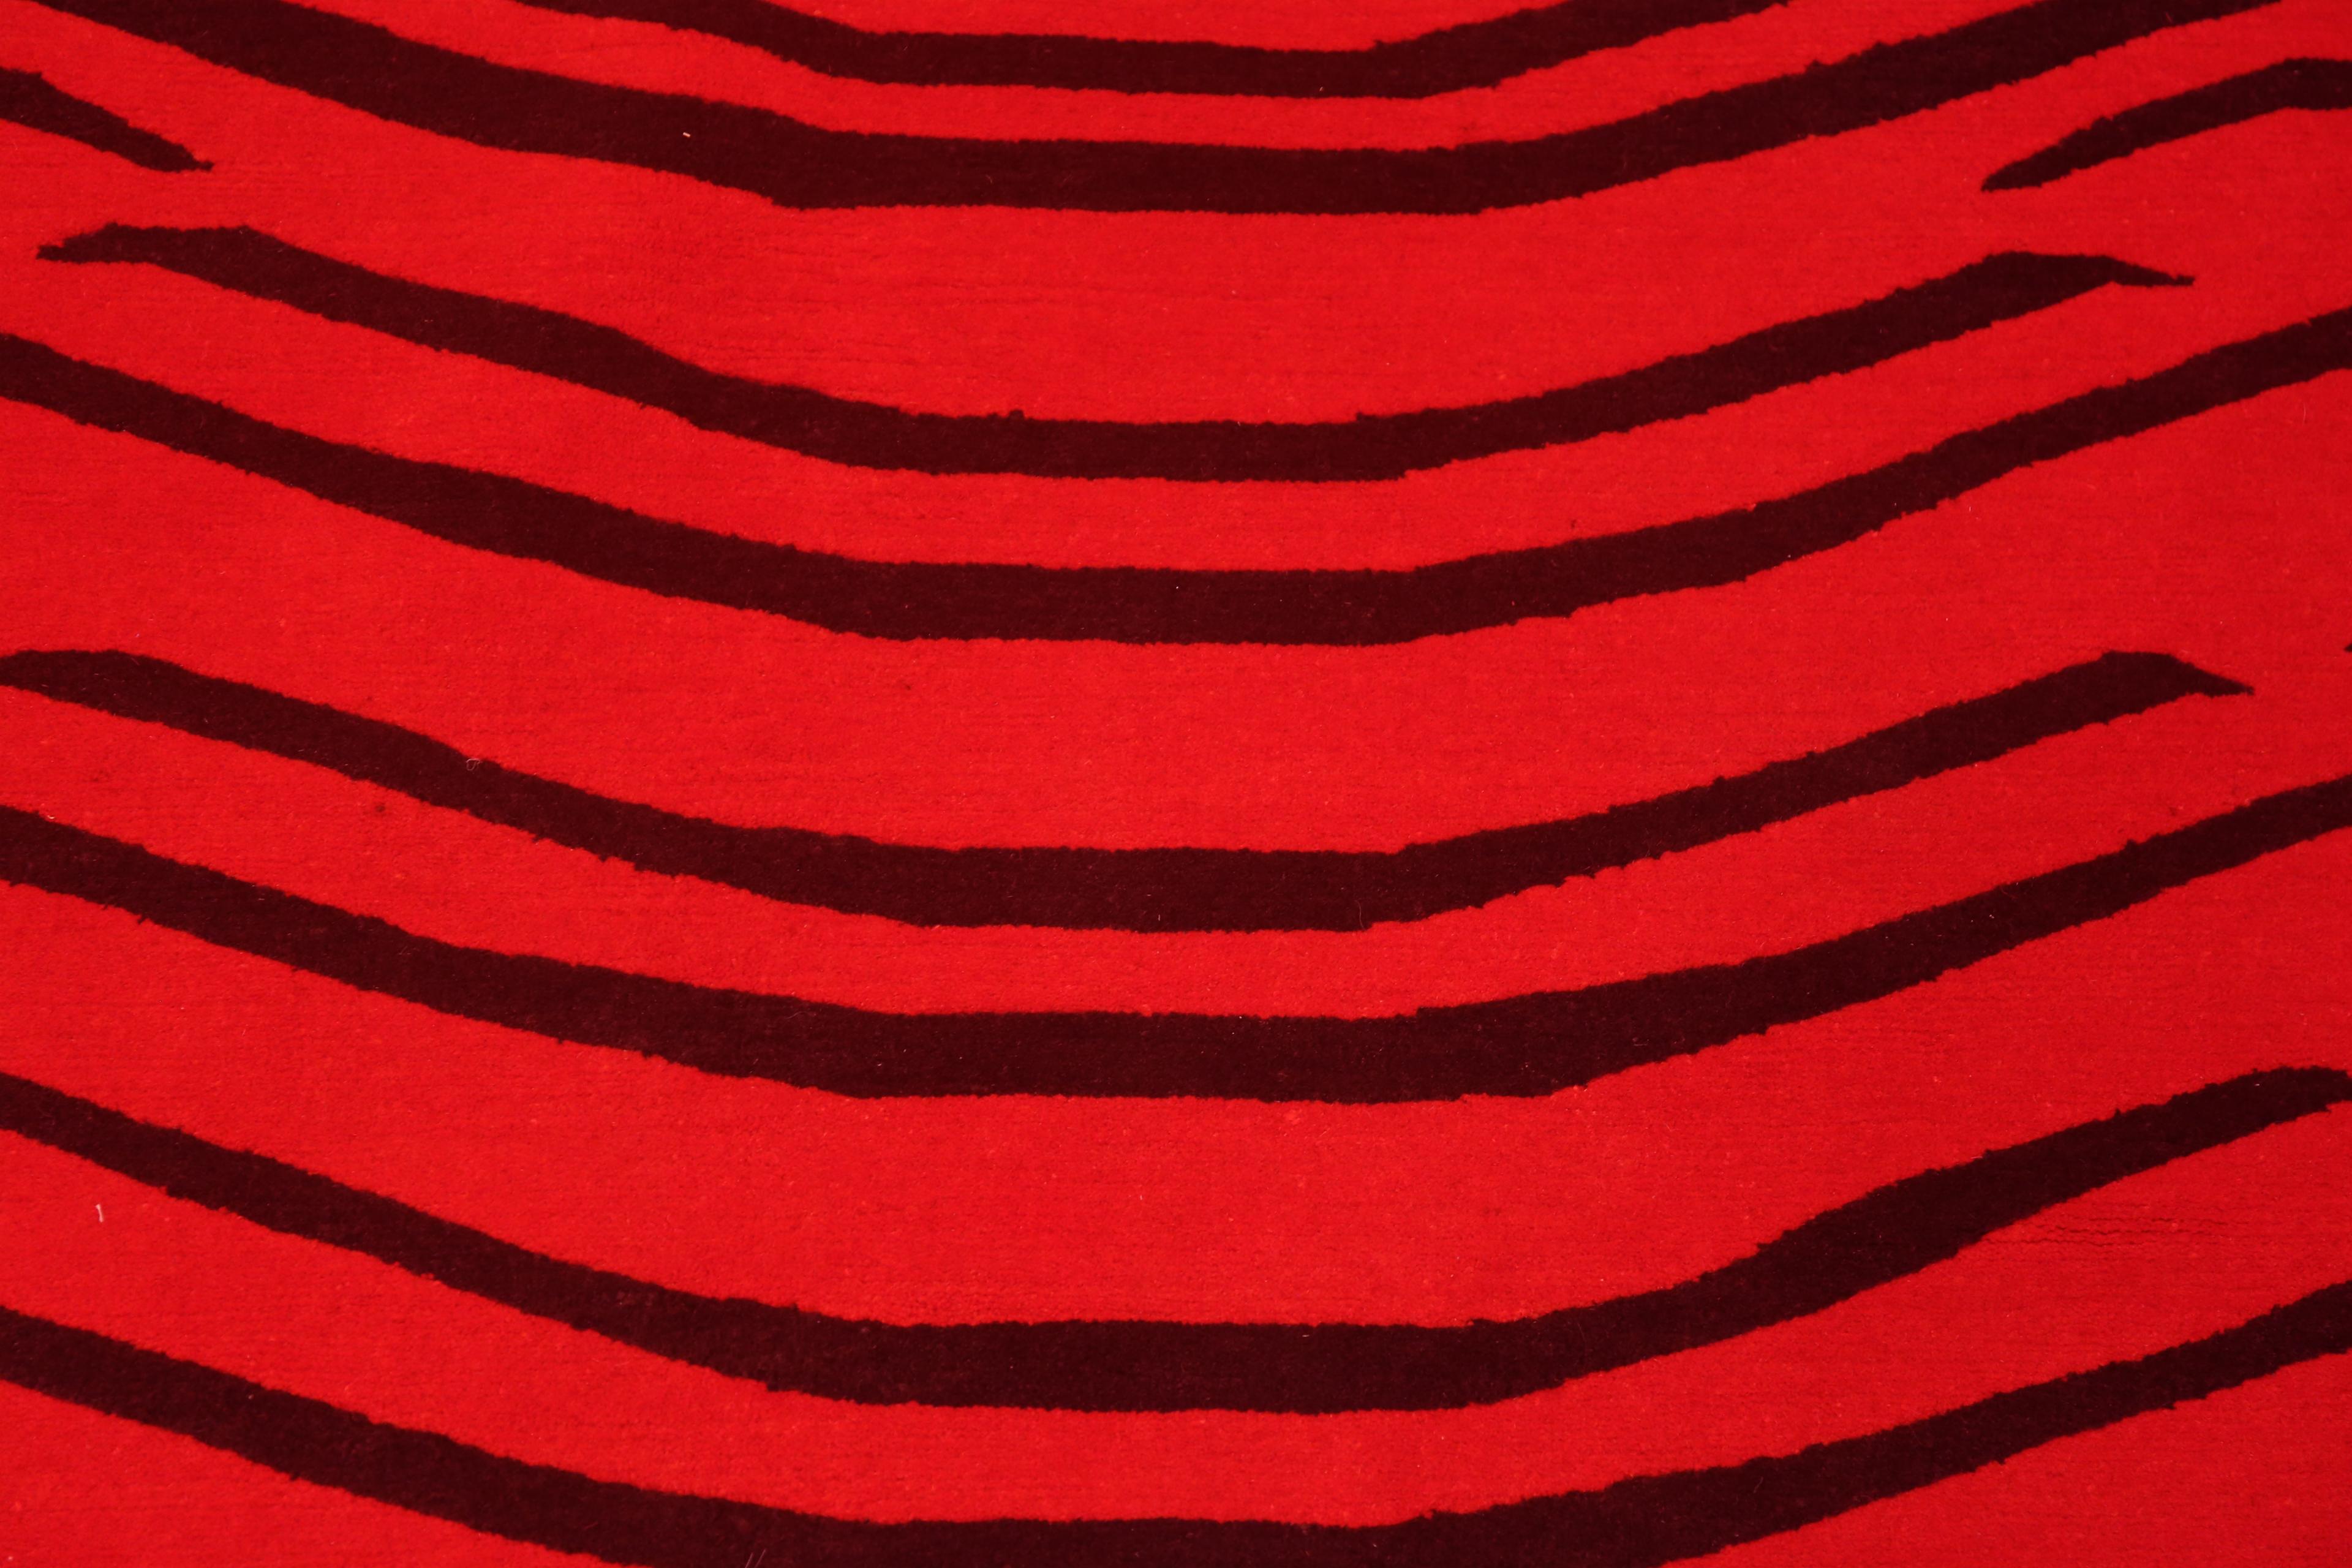 Nazmiyal Collection Red & Black Artistic Modern Tiger Design Rug 5'1